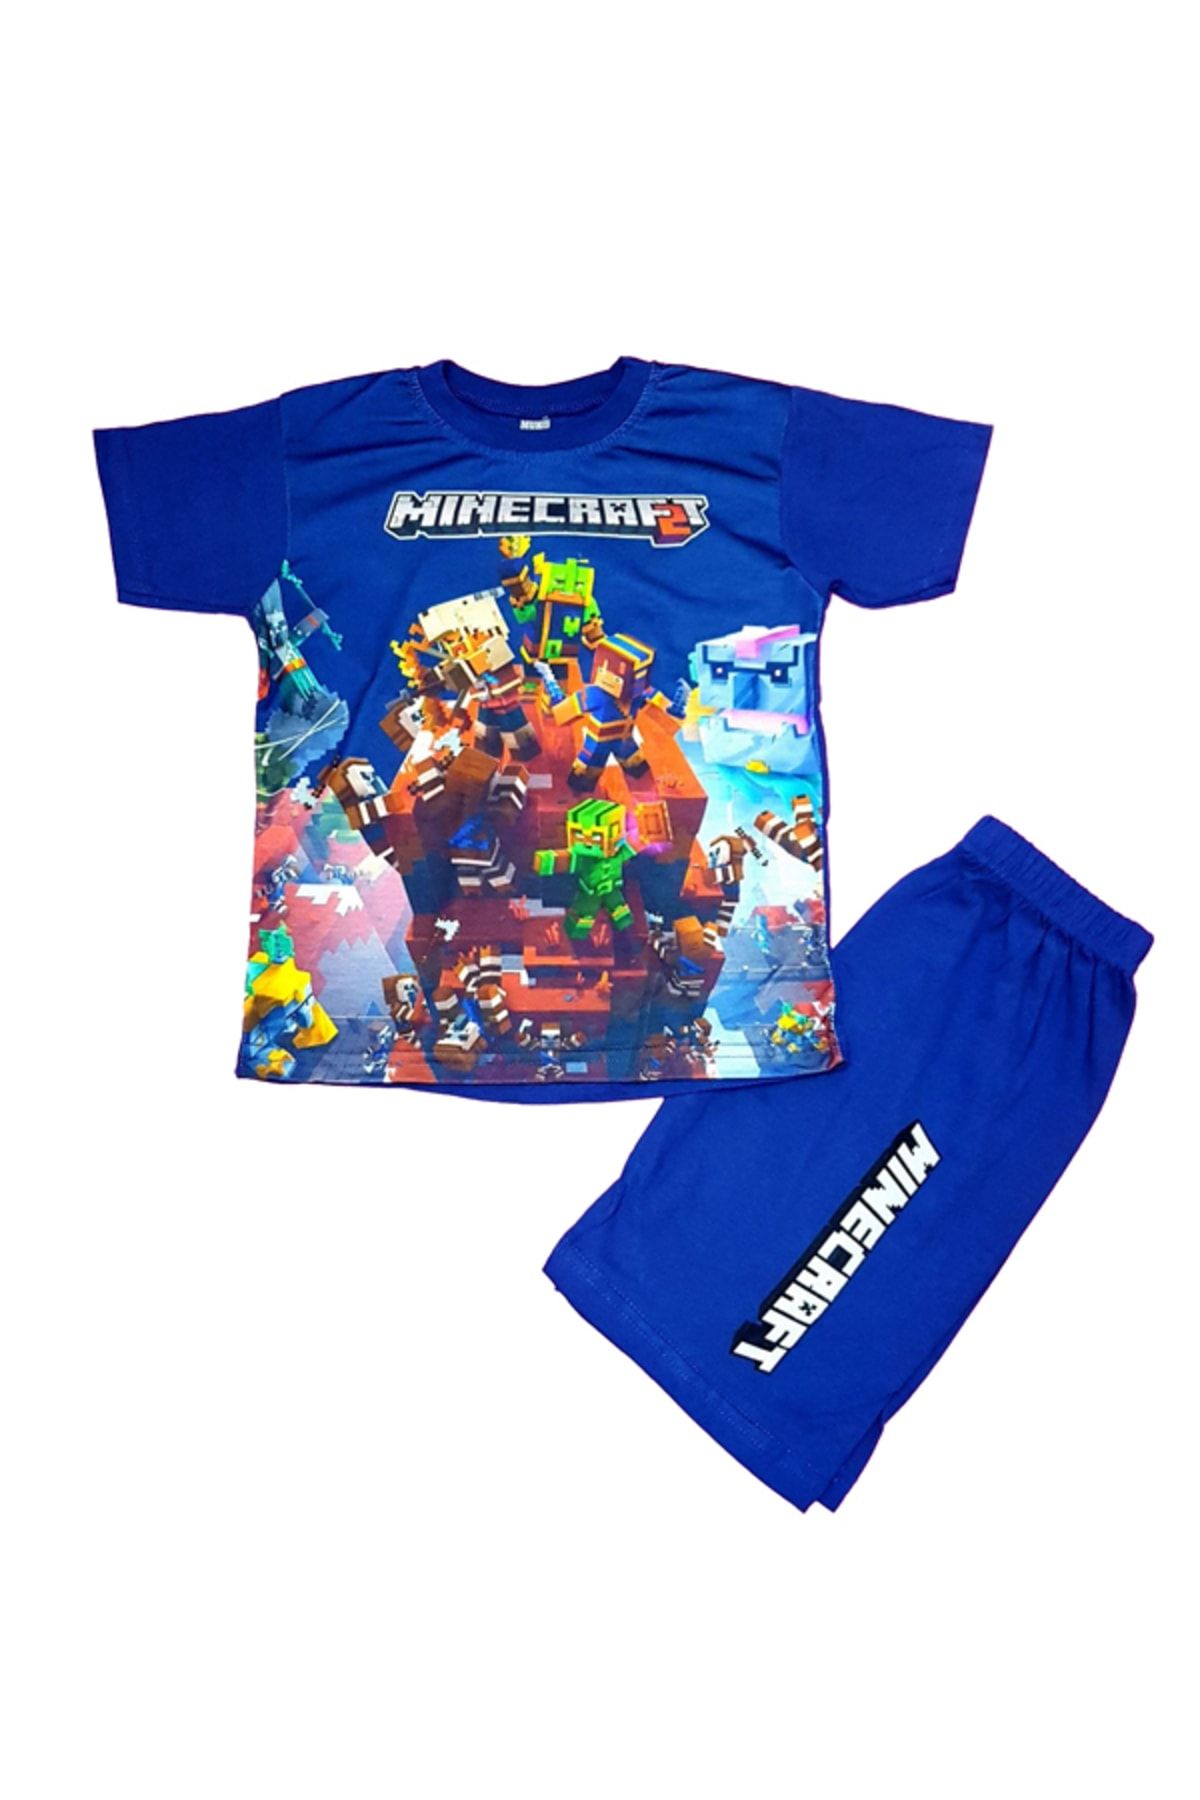 Minecraft Şort Tişört Alt Üst Çocuk Takım